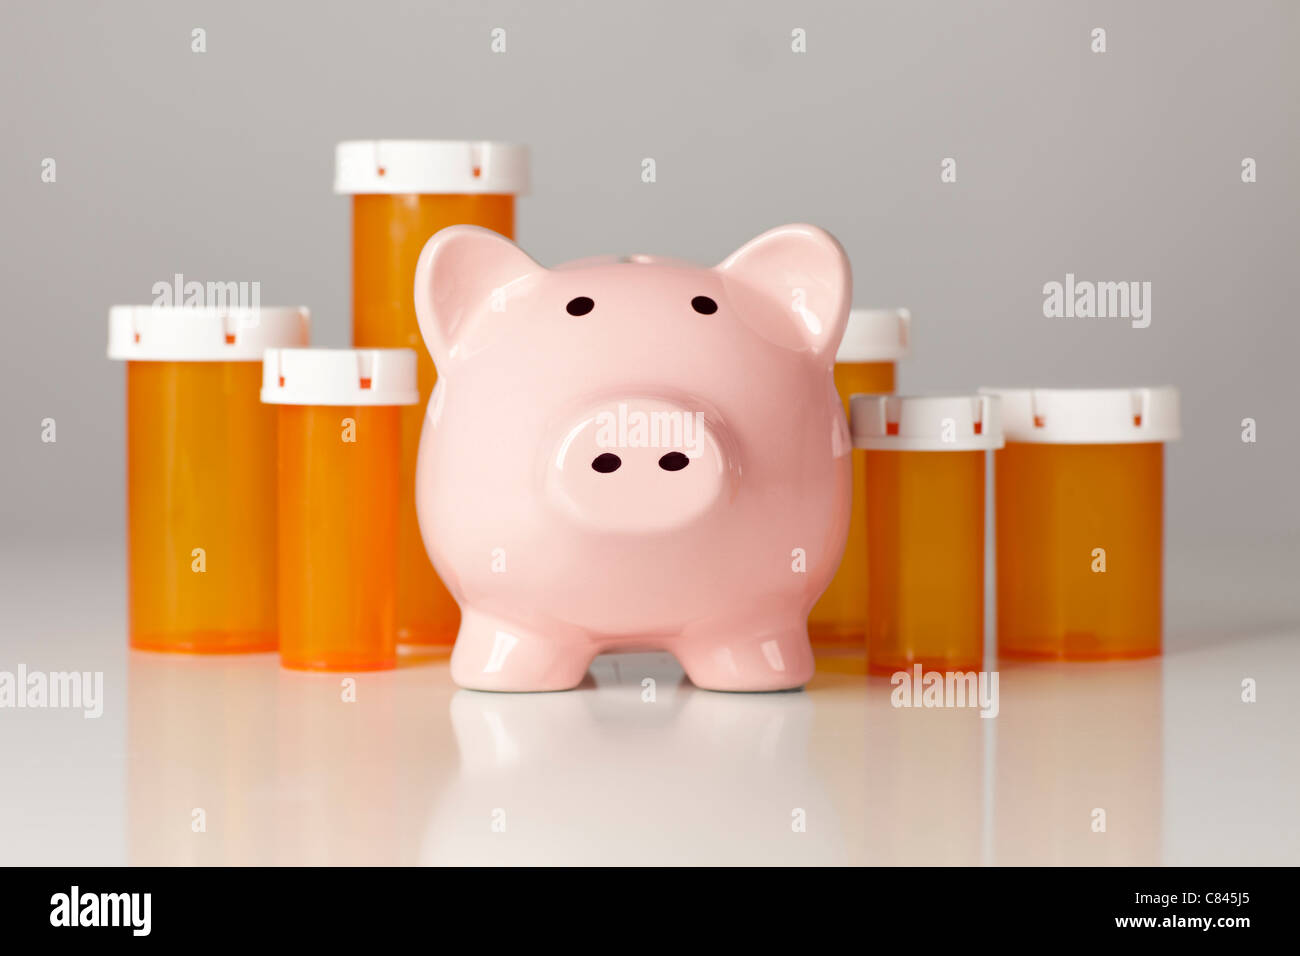 Sparschwein vor mehreren Medizin-Flaschen auf einem abgestuften Hintergrund. Stockfoto